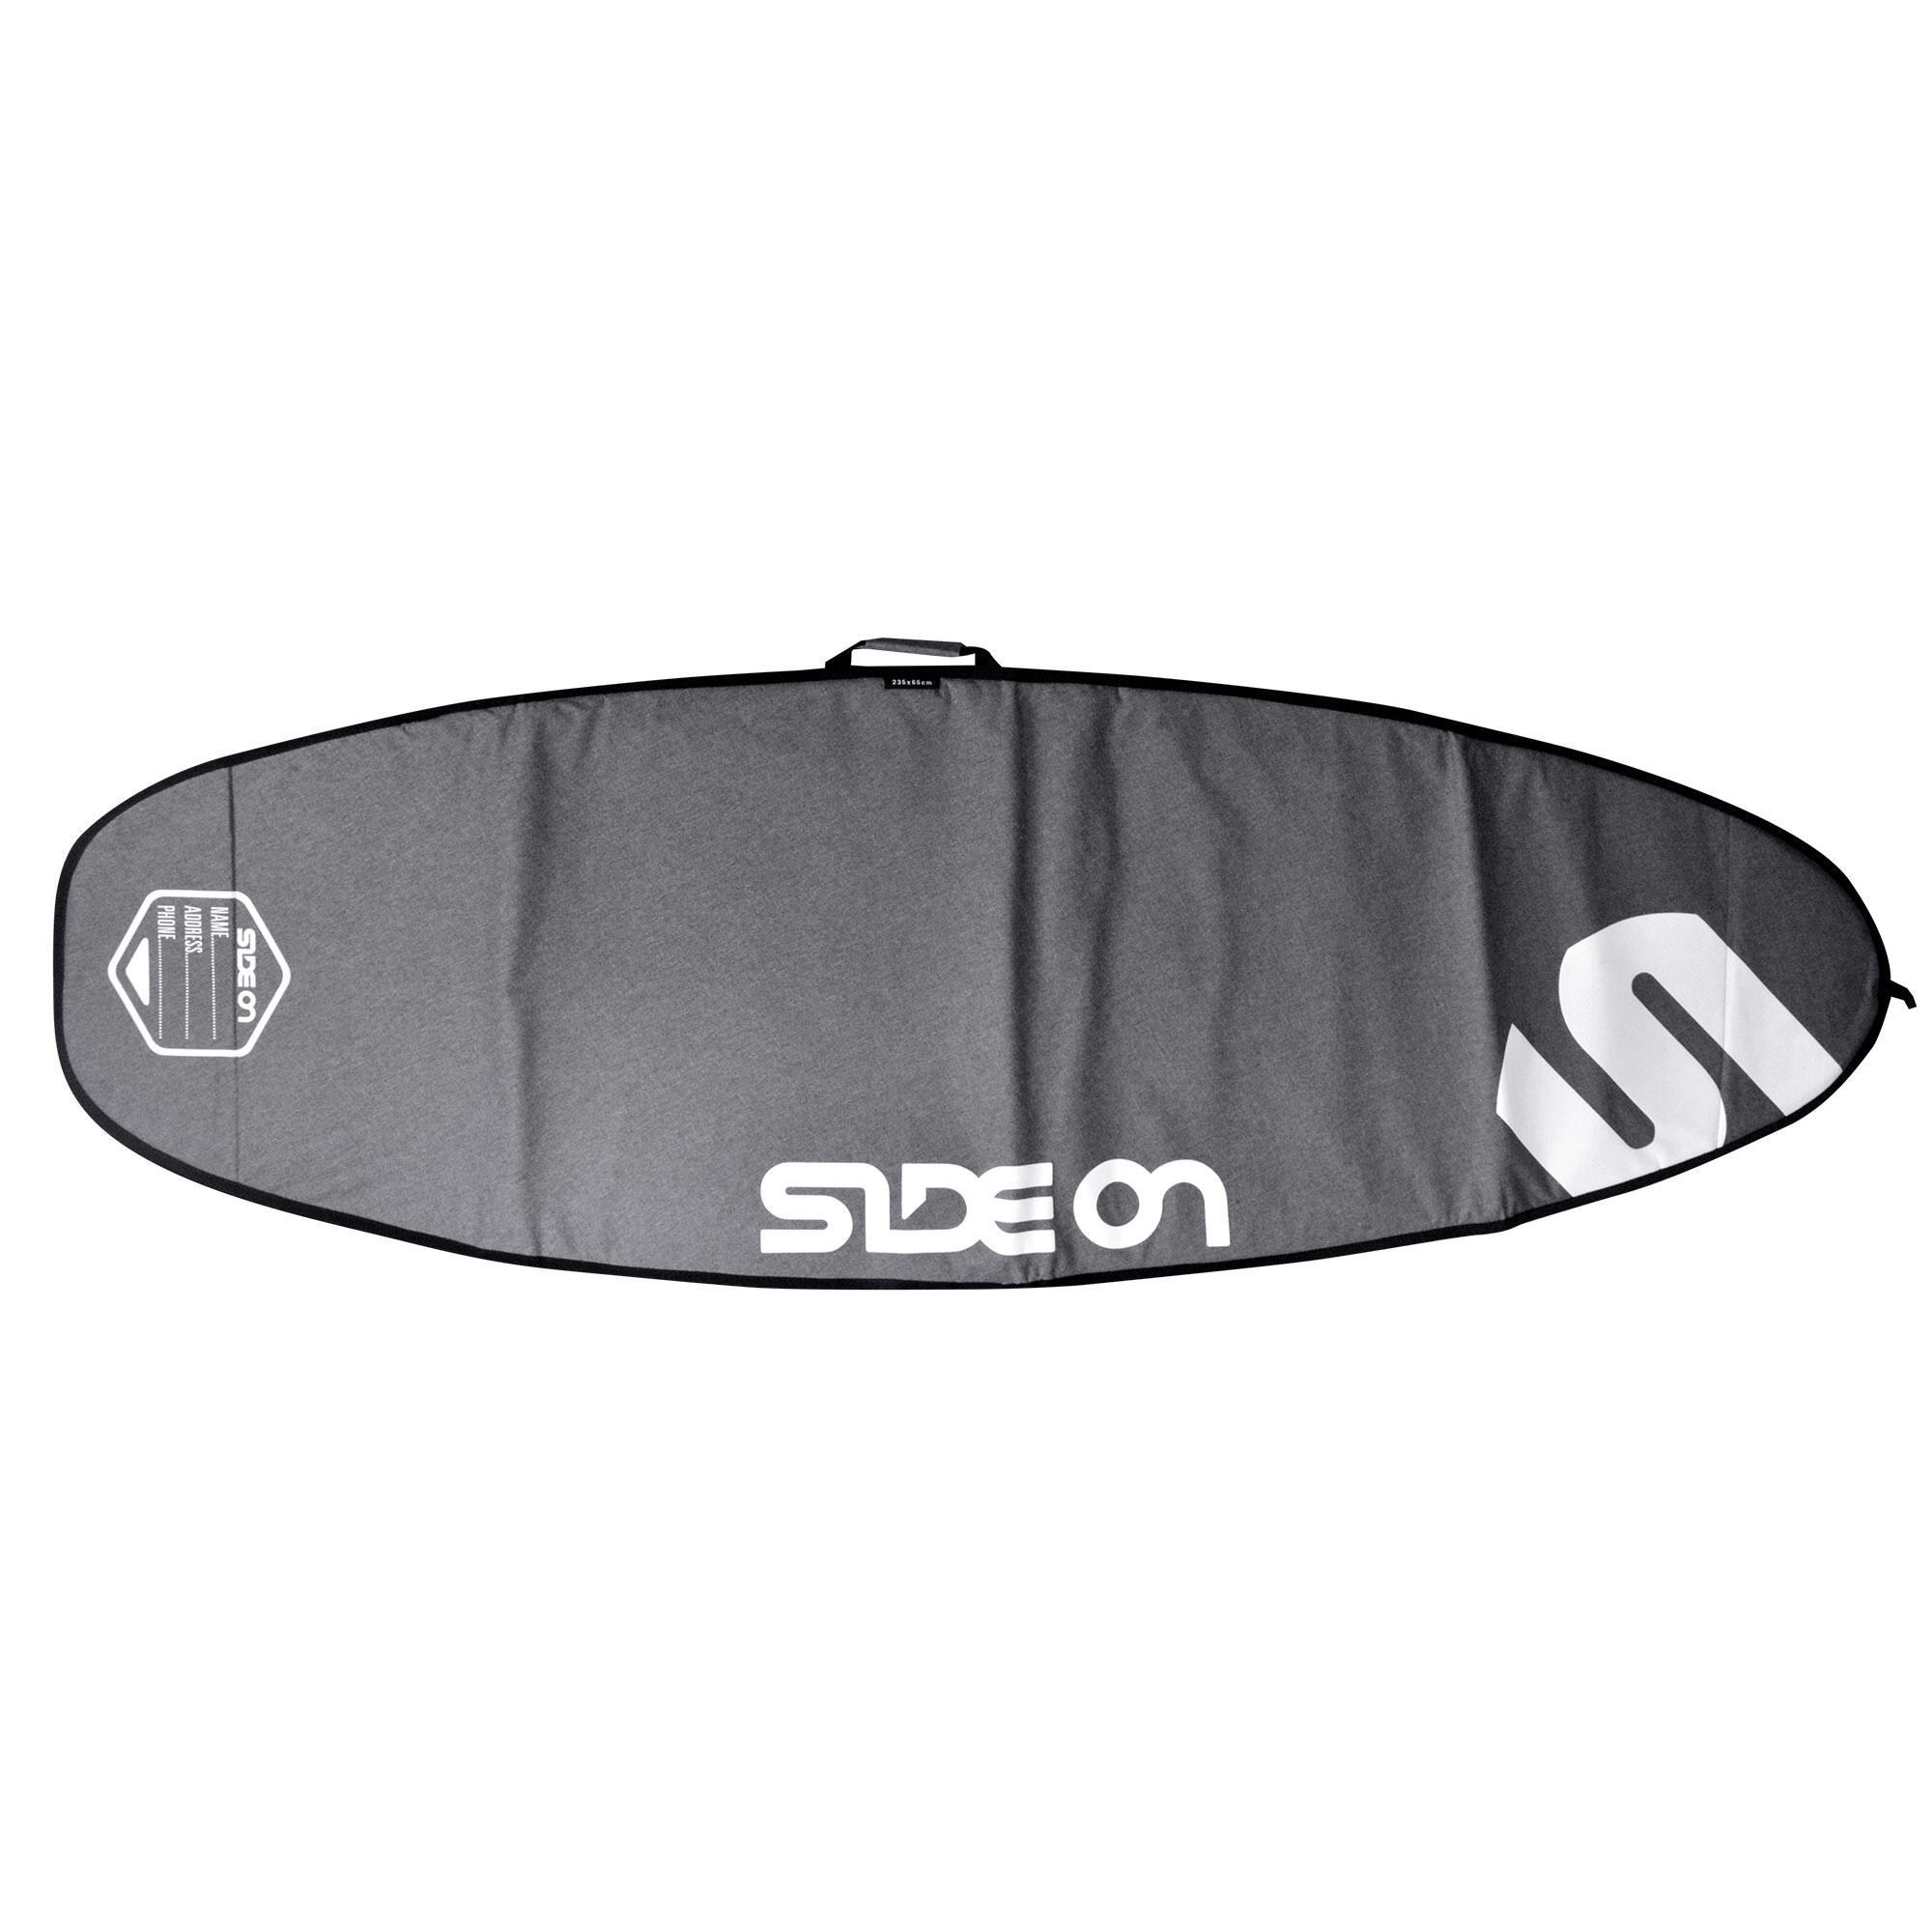 SIDE ON Boardbag Windsurfboard 245/85 Side On grau/weiss EINHEITSGRÖSSE